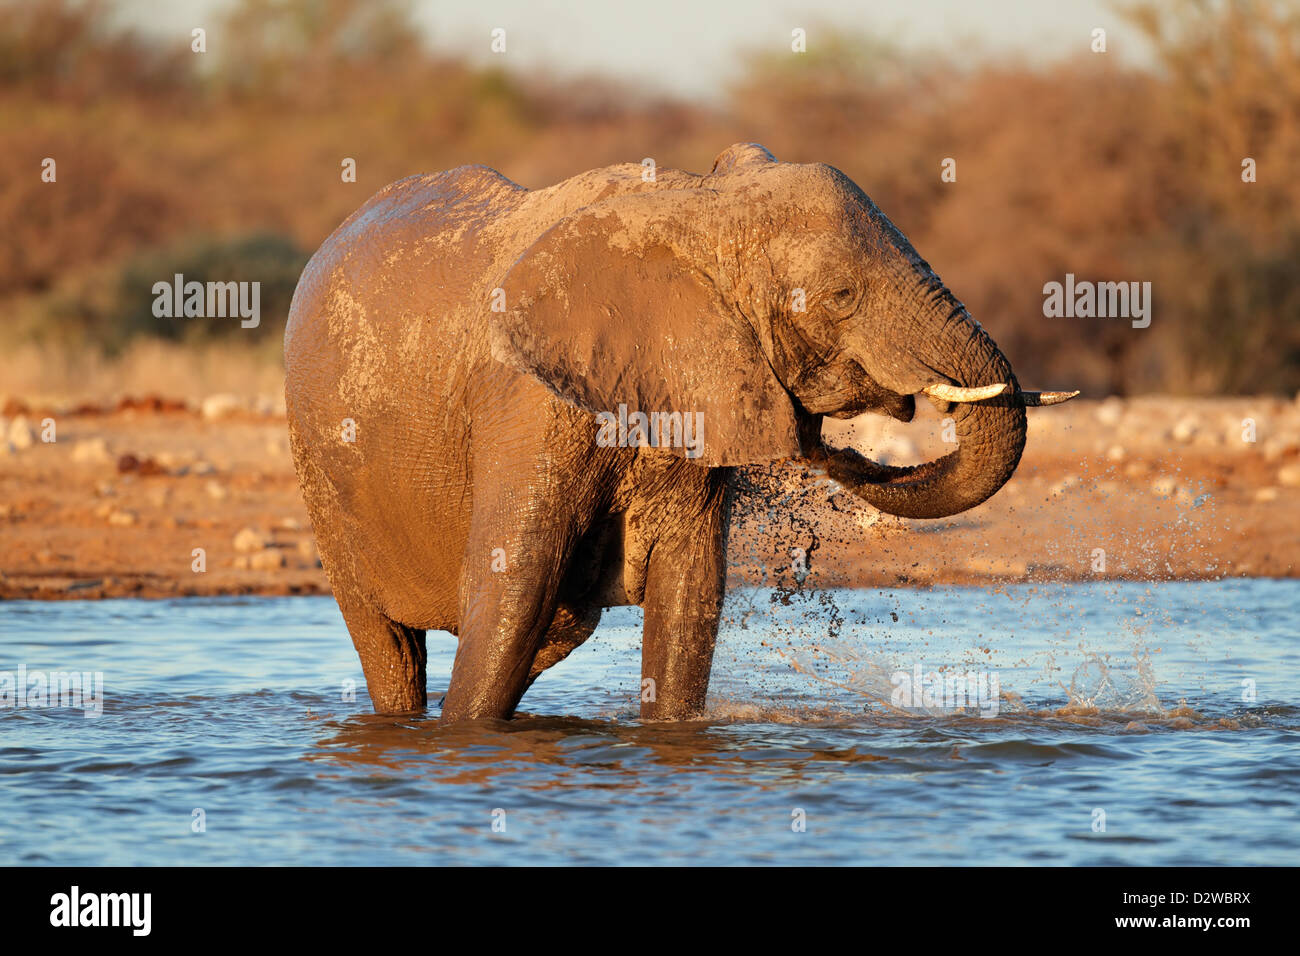 African elephant (Loxodonta africana) playing in water, Etosha National Park, Namibia Stock Photo